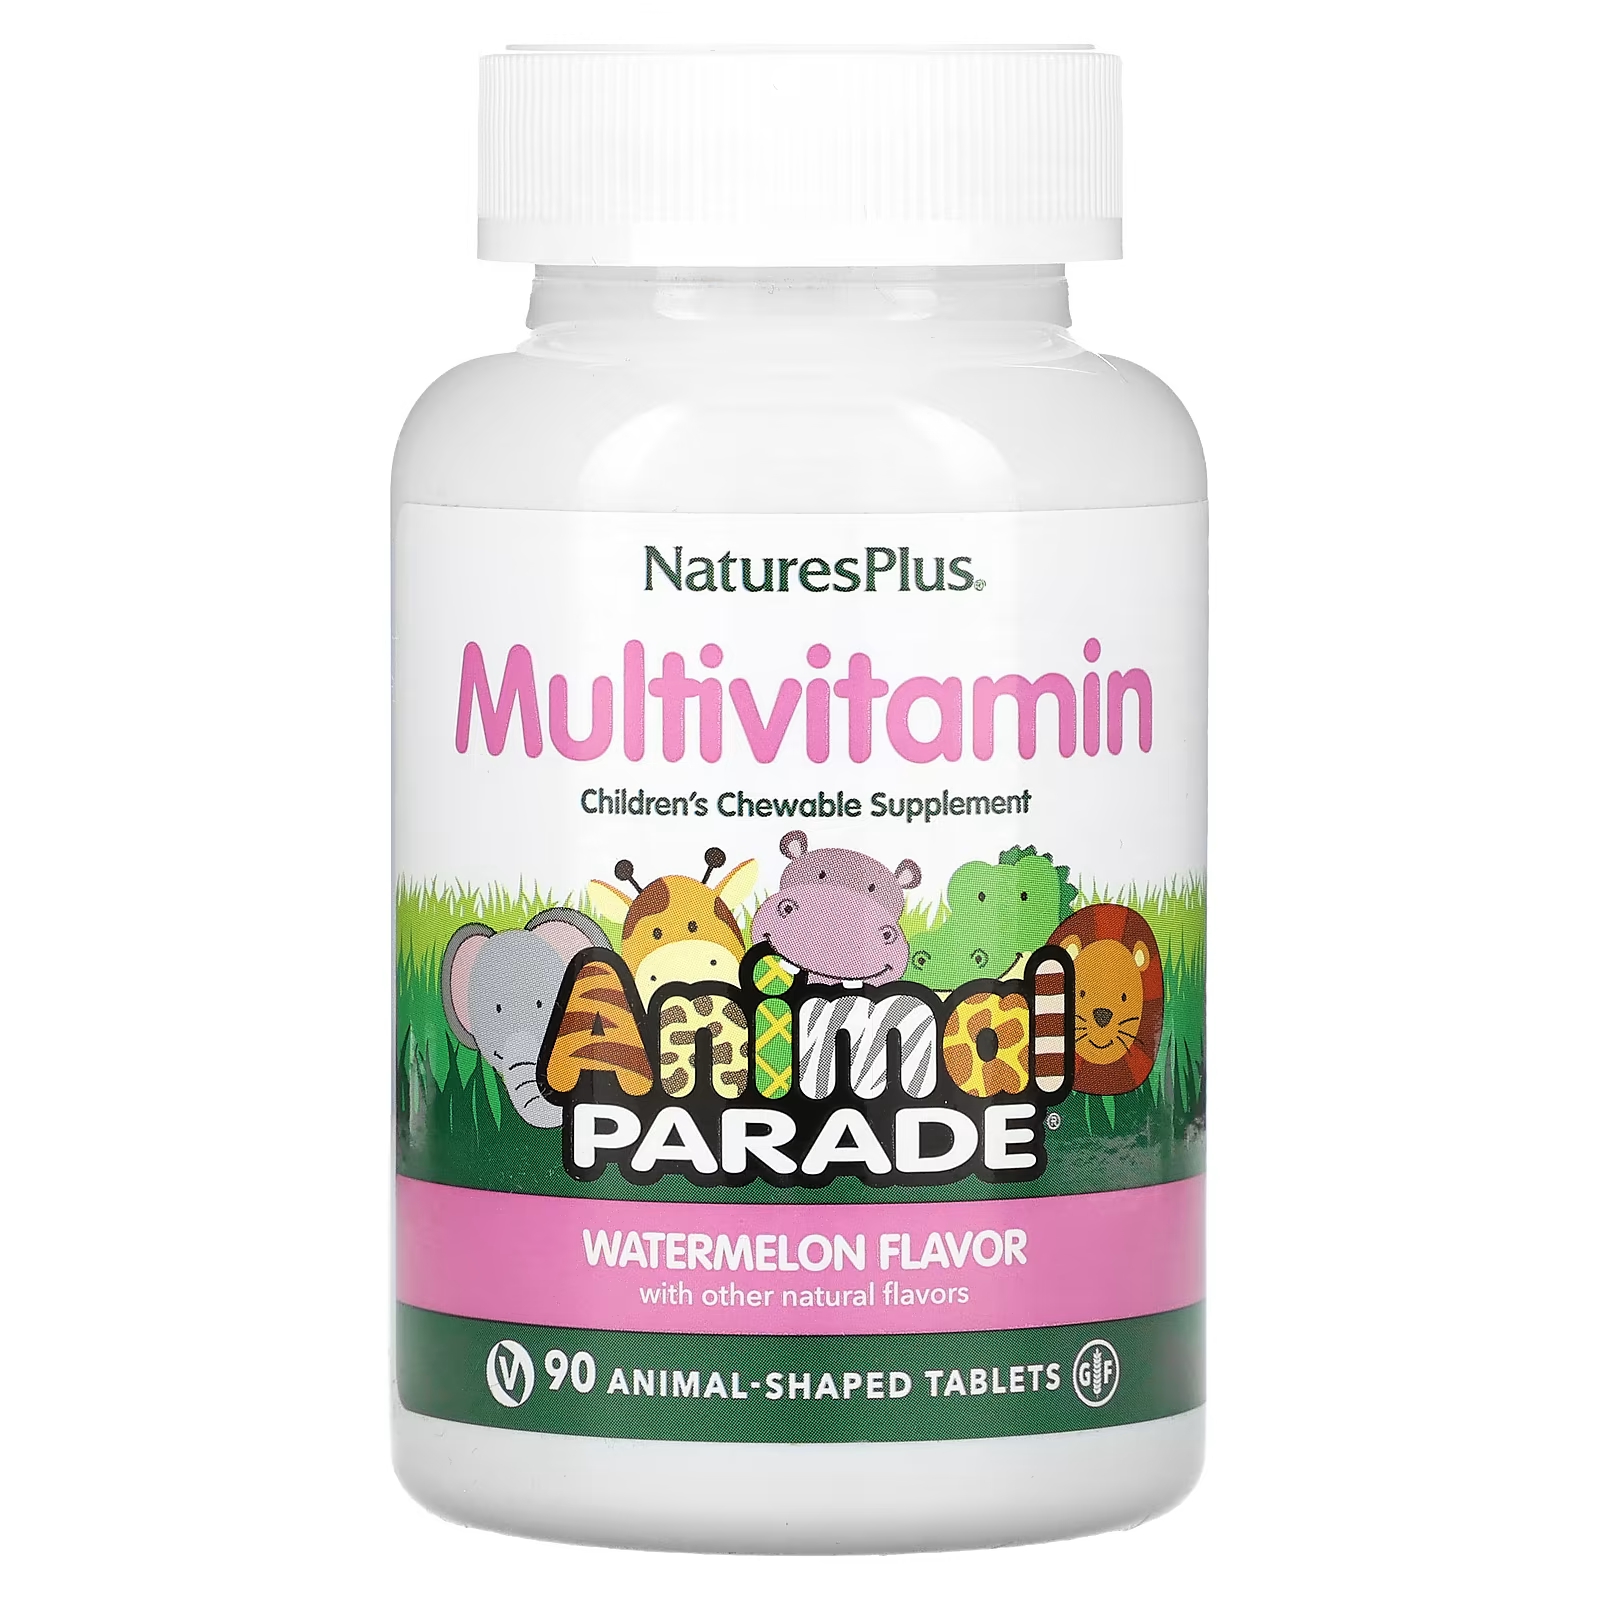 Мультивитамины NaturesPlus для детей со вкусом арбуза, 90 таблеток мультивитамины naturesplus для детей со вкусом апельсина 90 таблеток